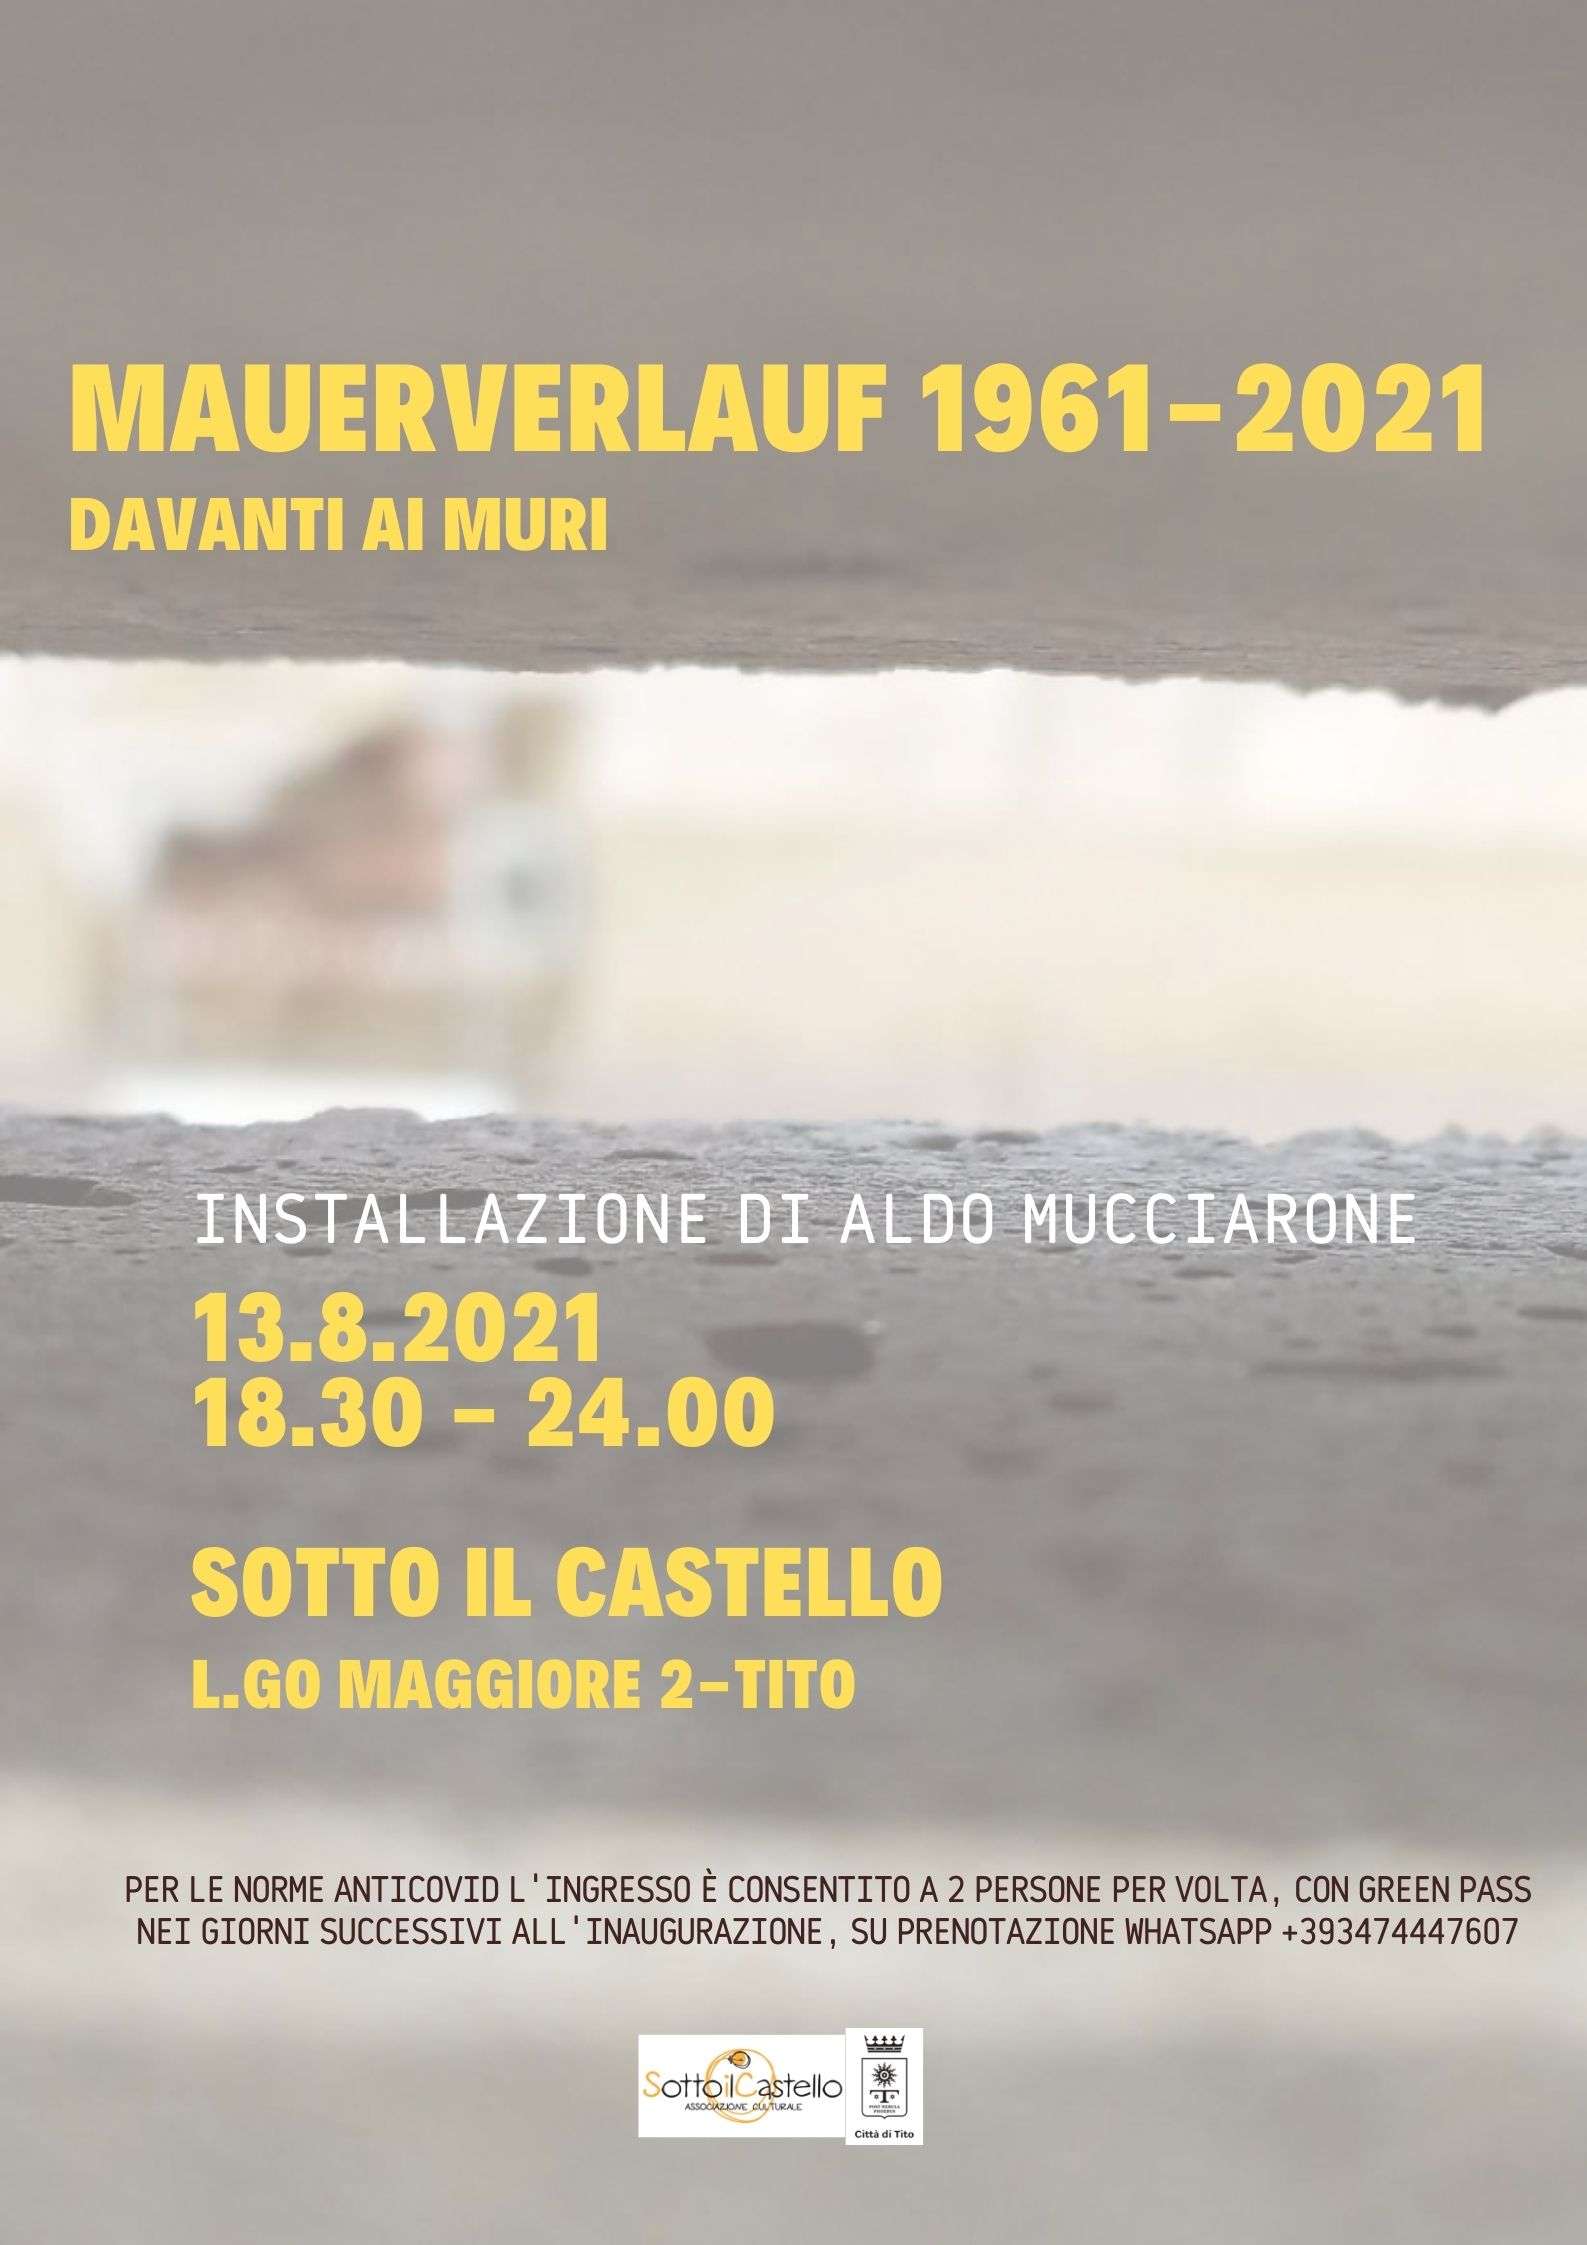 Mauerverlauf 1961-2021: a Tito una riflessione sui muri del passato e del presente